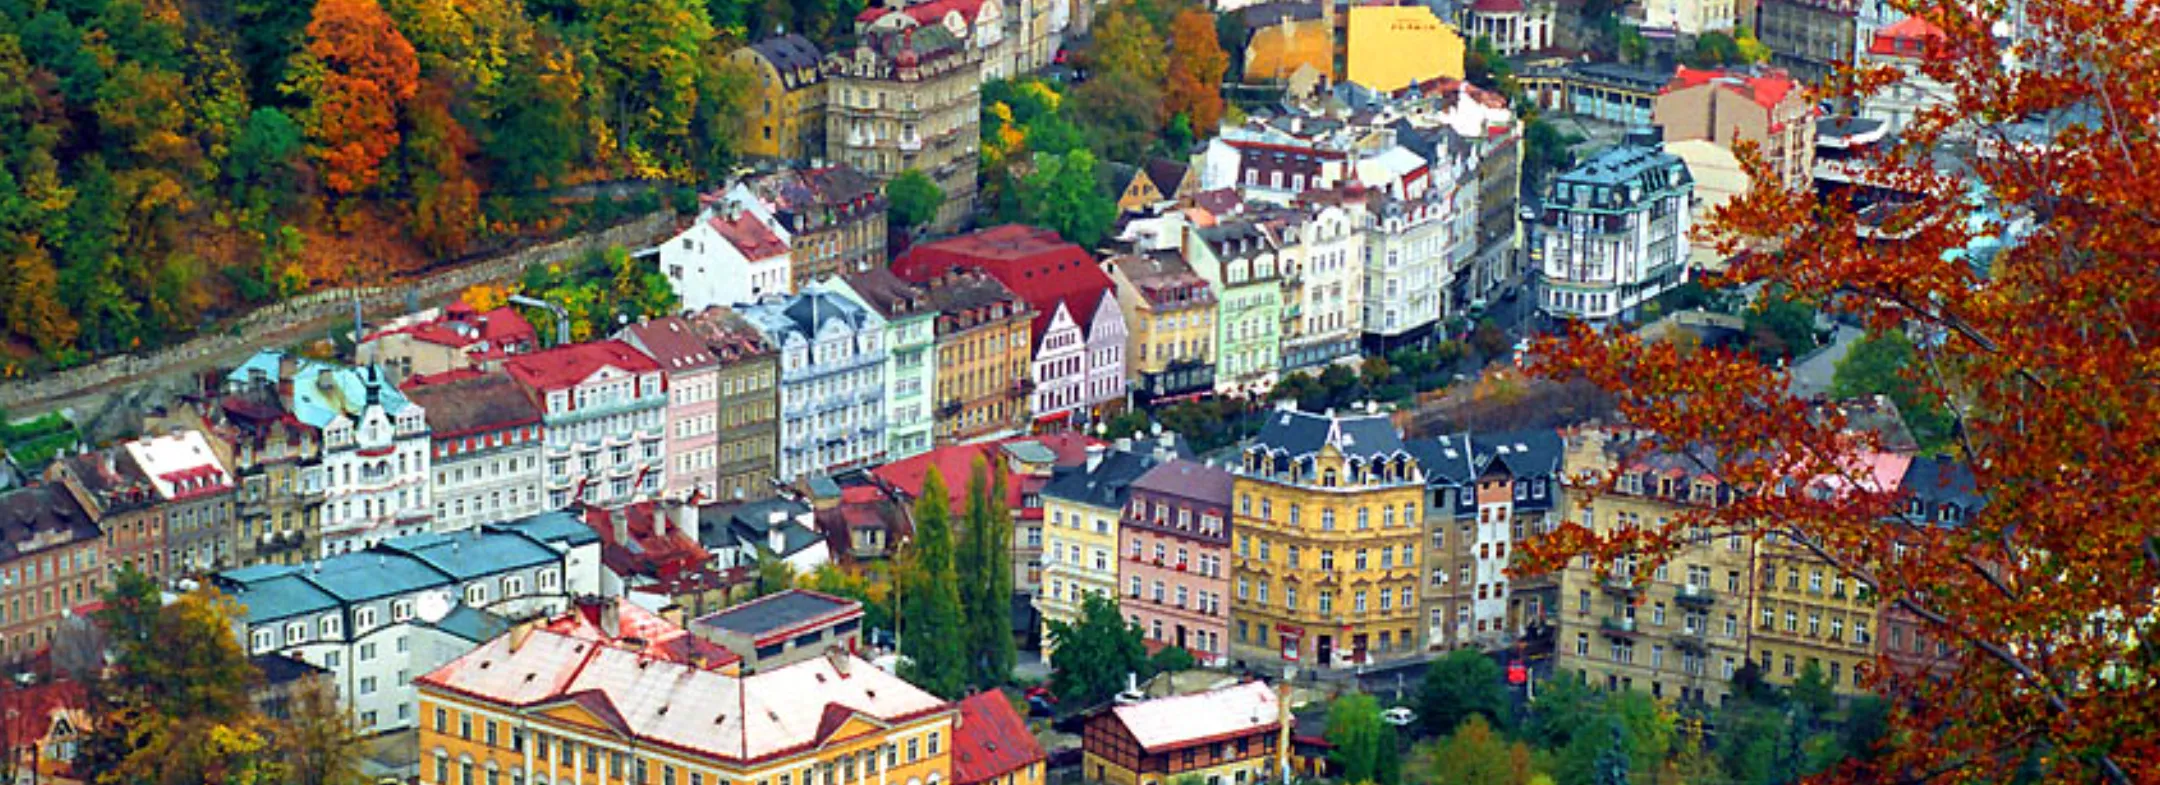 Poster Karlovy Vary